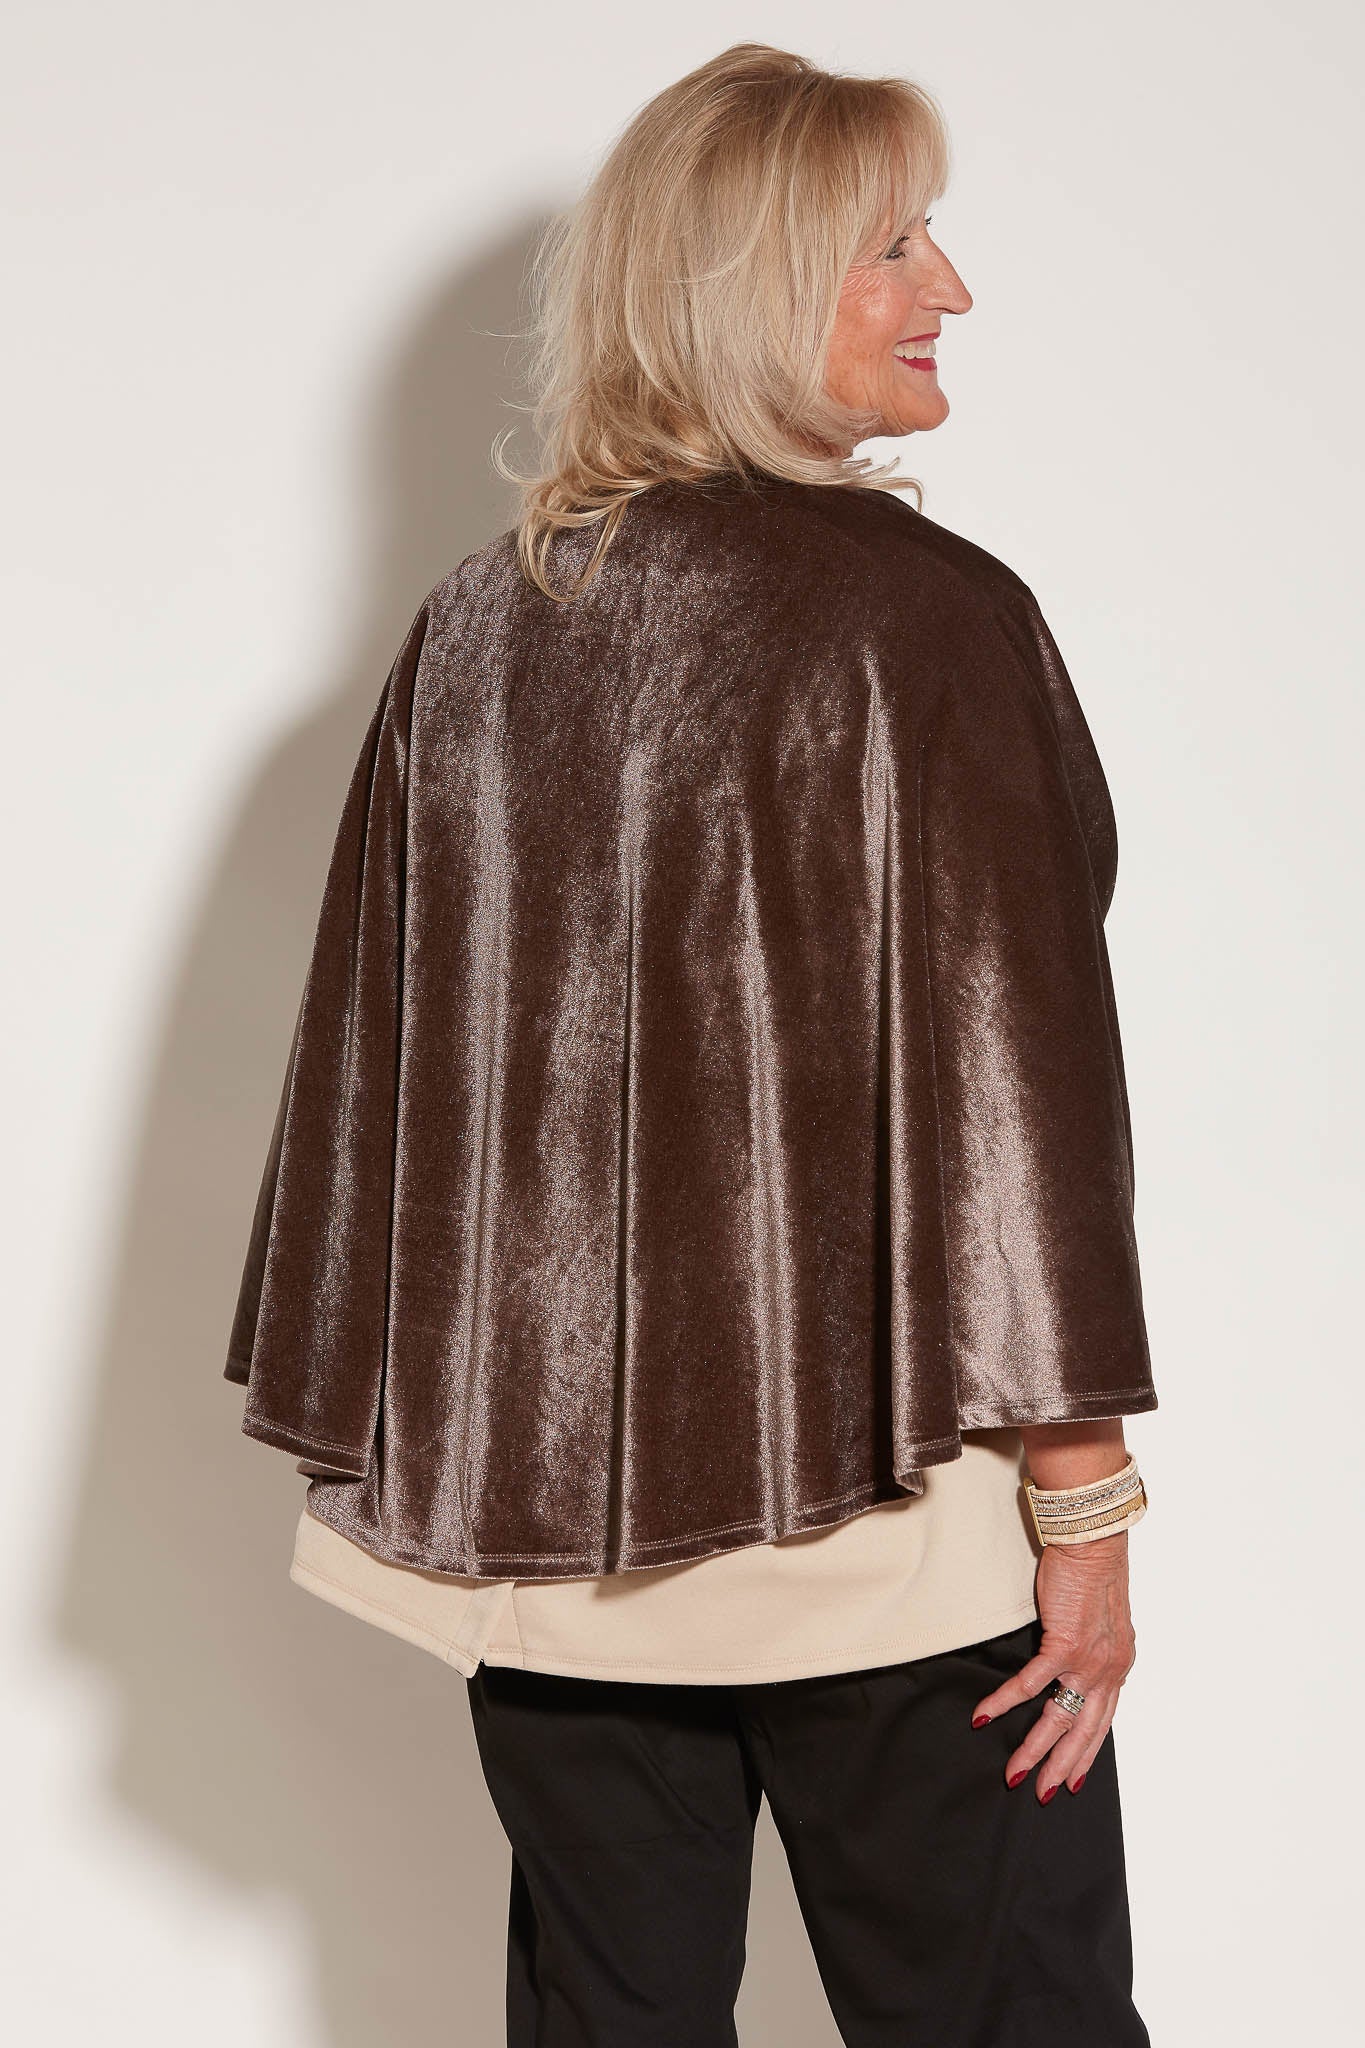 Shawl - Bronze | Velvety | Adaptive Clothing by Ovidis